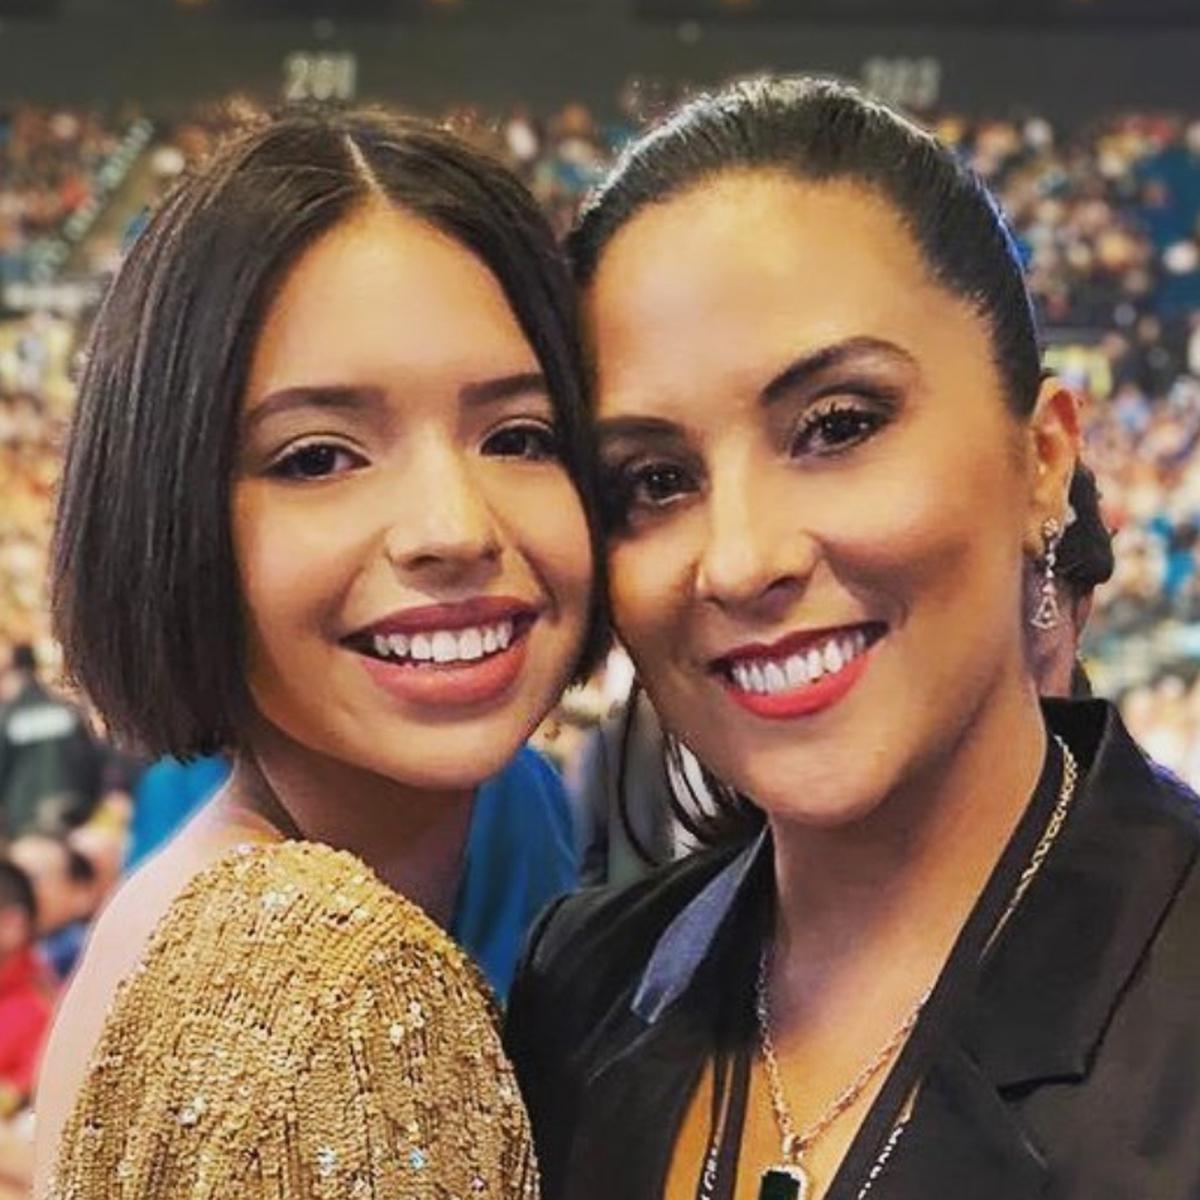 Aneliz Álvarez, es y fotos de Instagram de la esposa de Pepe y de Ángela Aguilar | Leonardo Aguilar Celebs de México | FAMA | MAG.